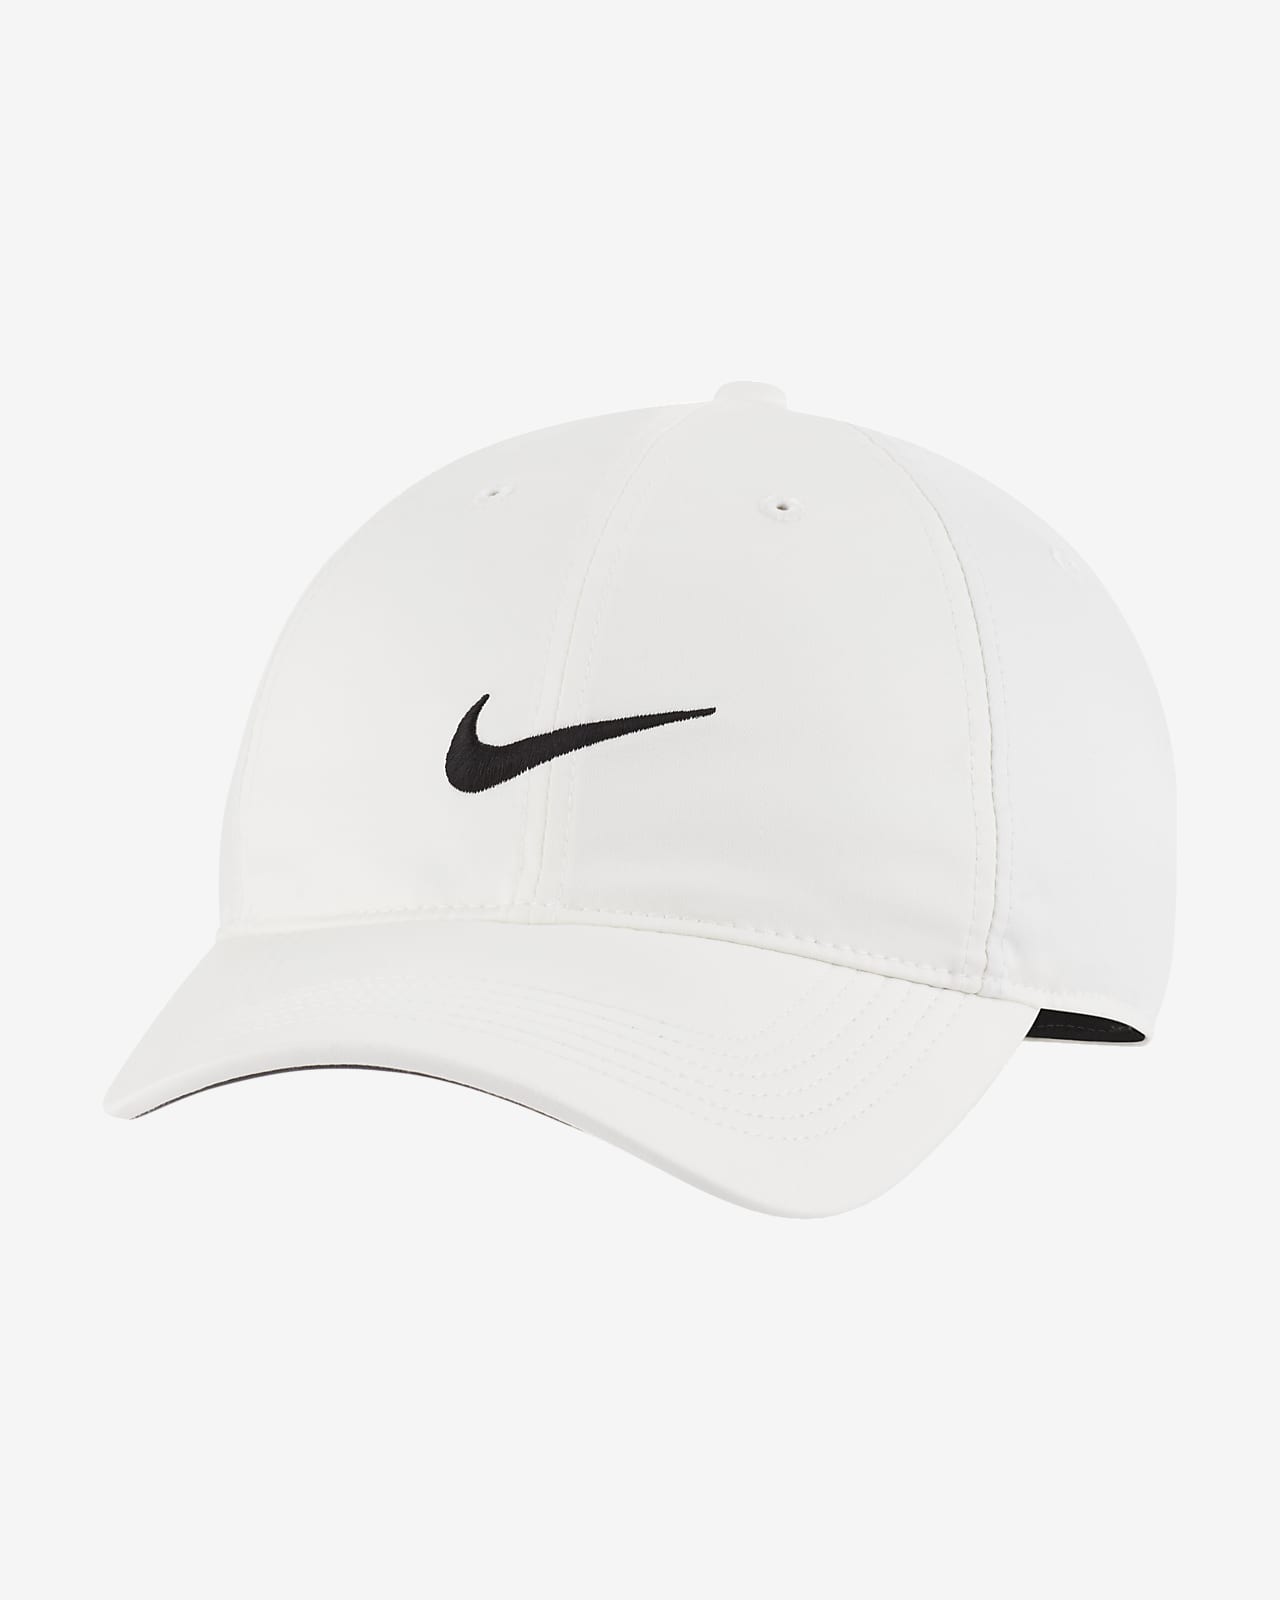 Nike公式 ナイキ エアロビル ヘリテージ86 プレーヤー ゴルフキャップ オンラインストア 通販サイト